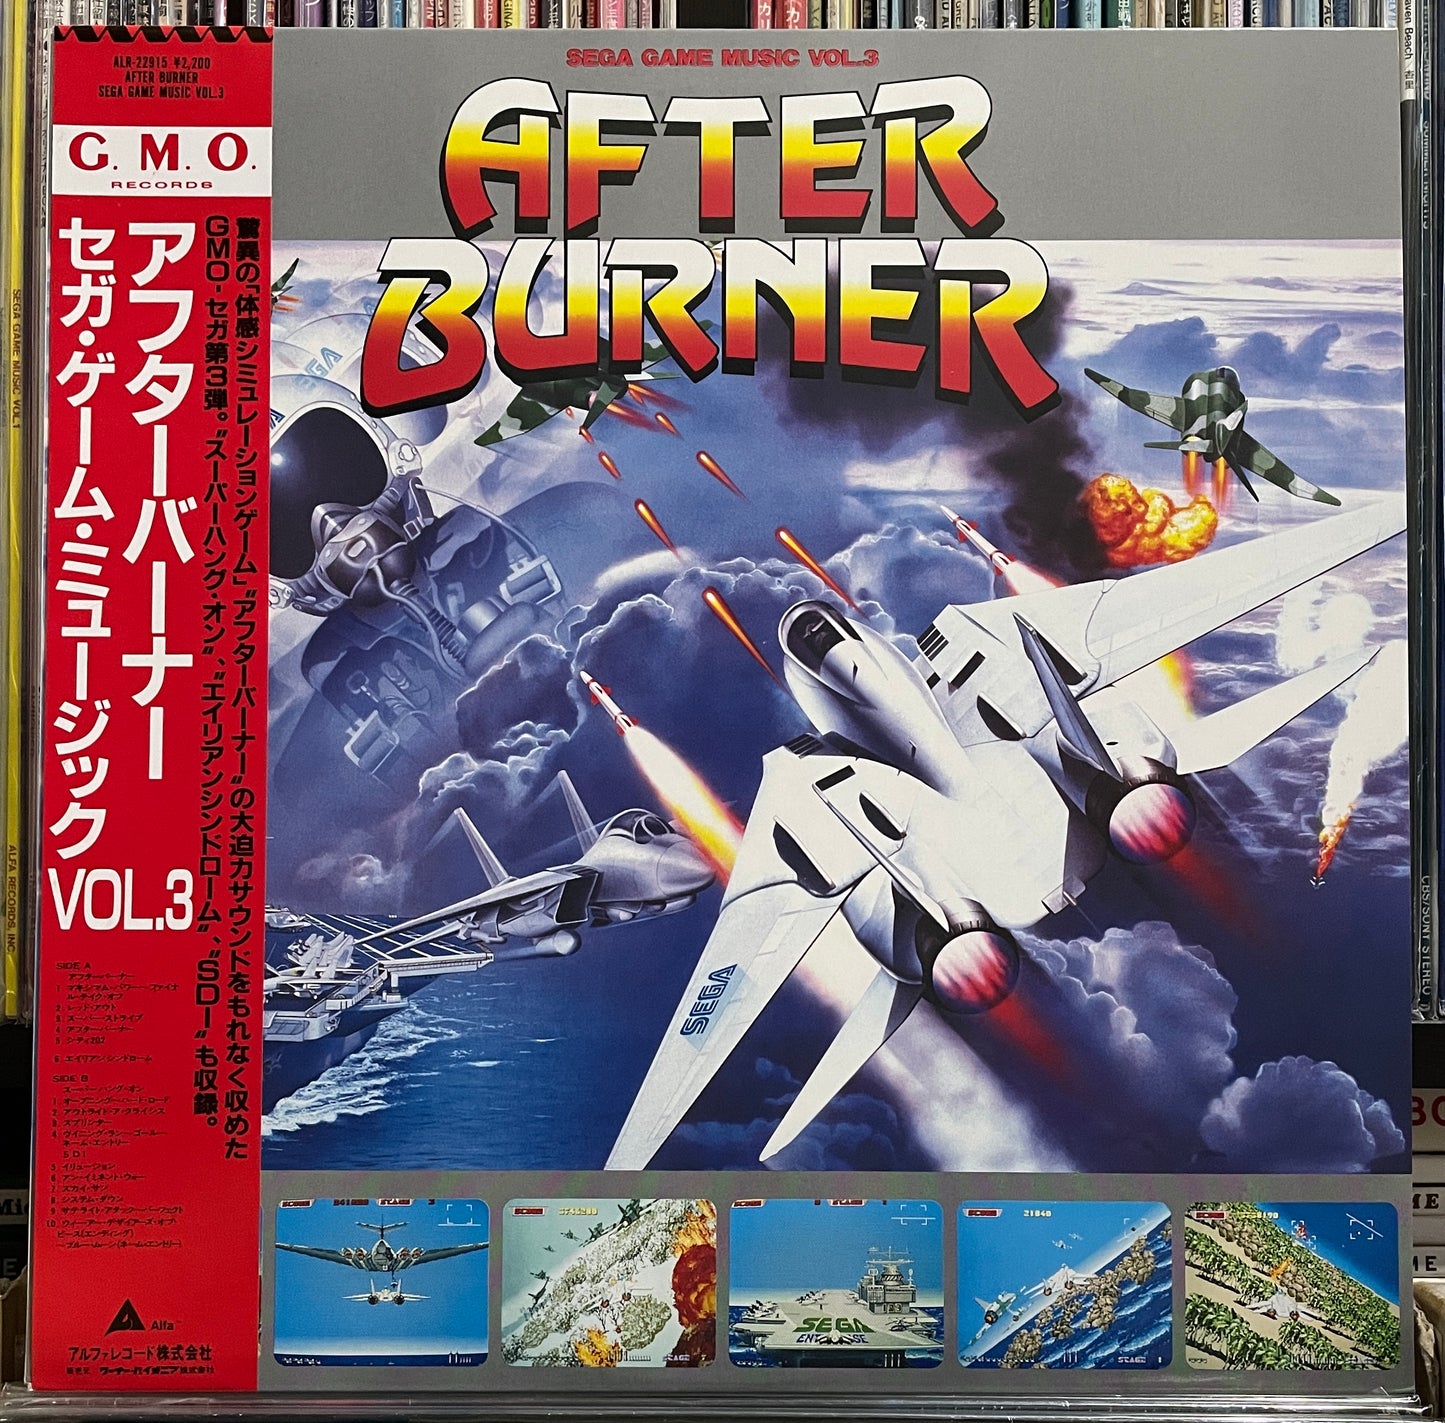 Sega Game Music Vol. 3 “After Burner” (1987)